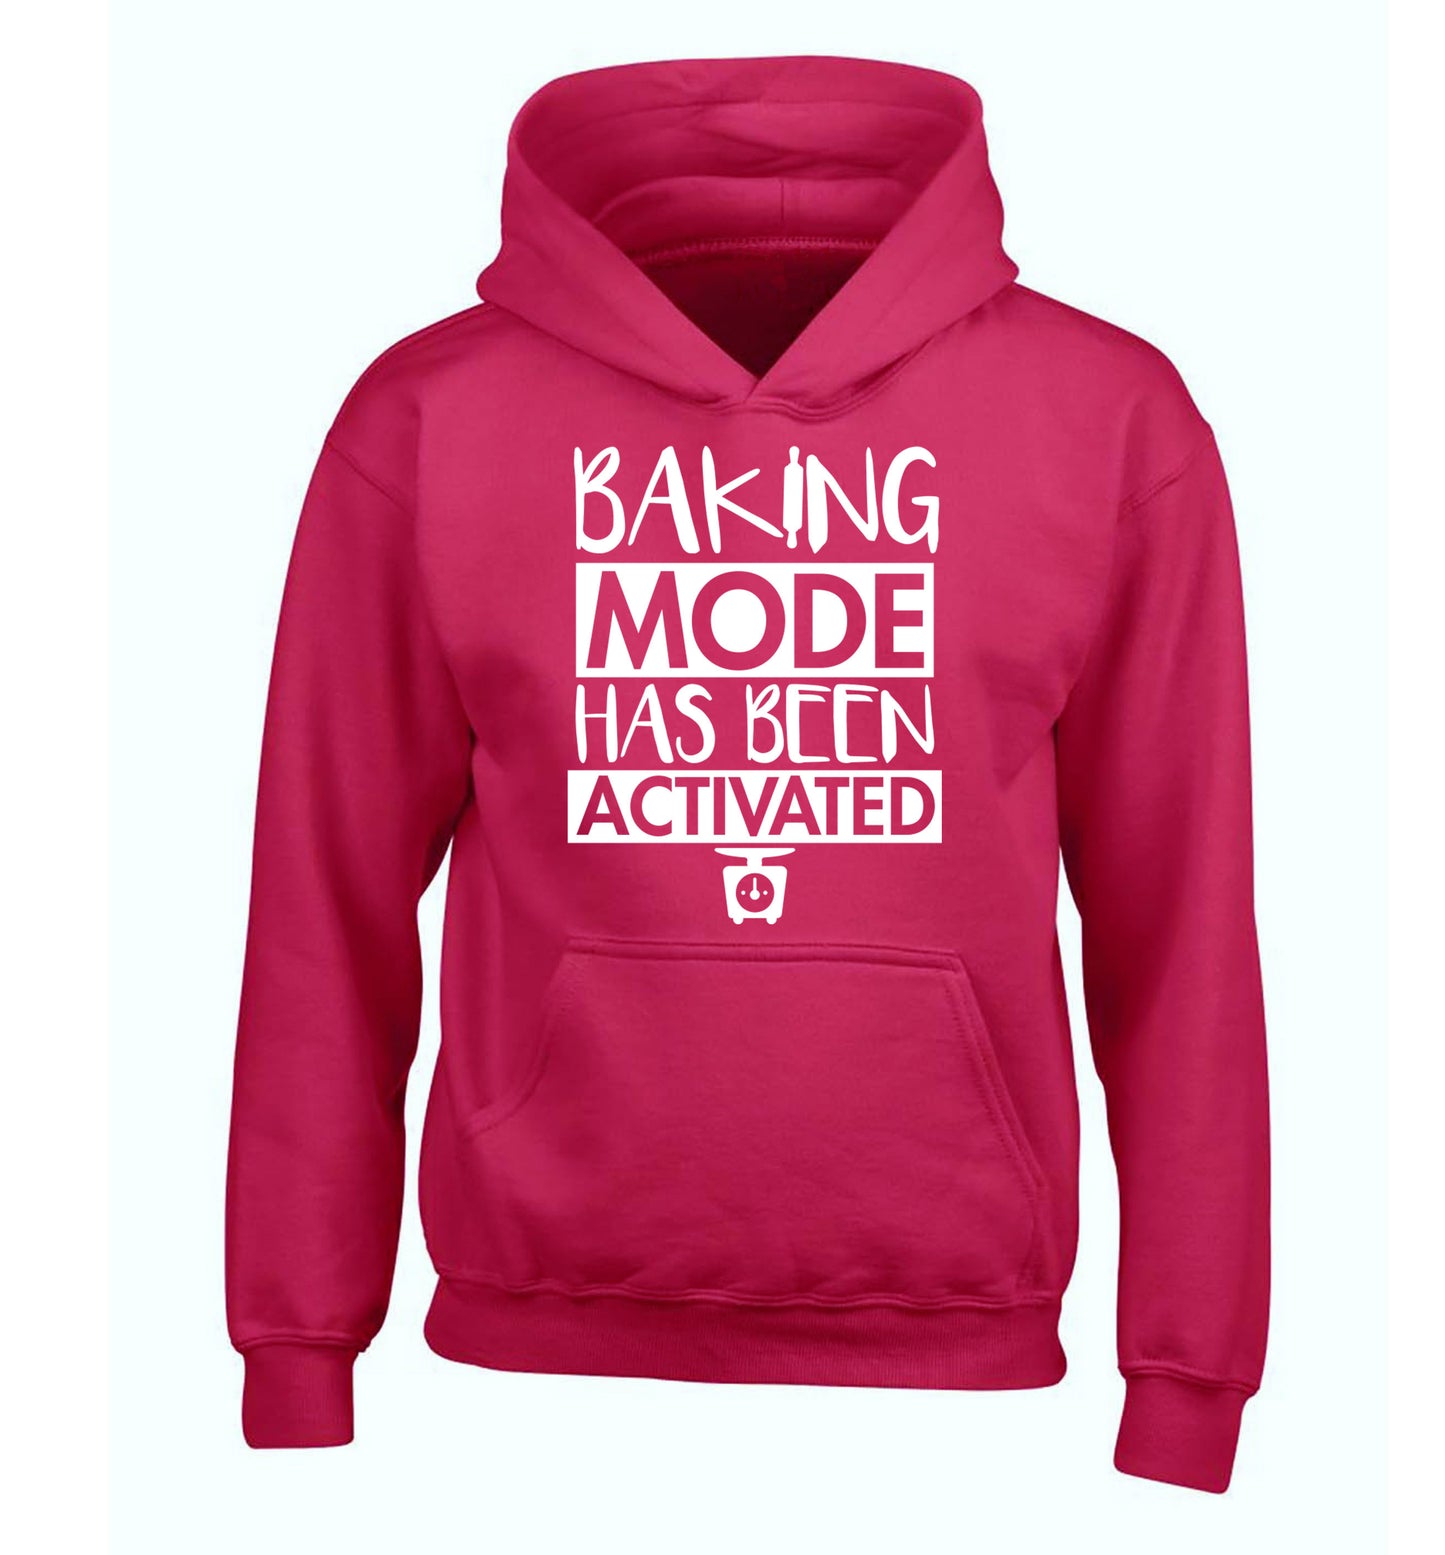 Baking mode has been activated children's pink hoodie 12-14 Years